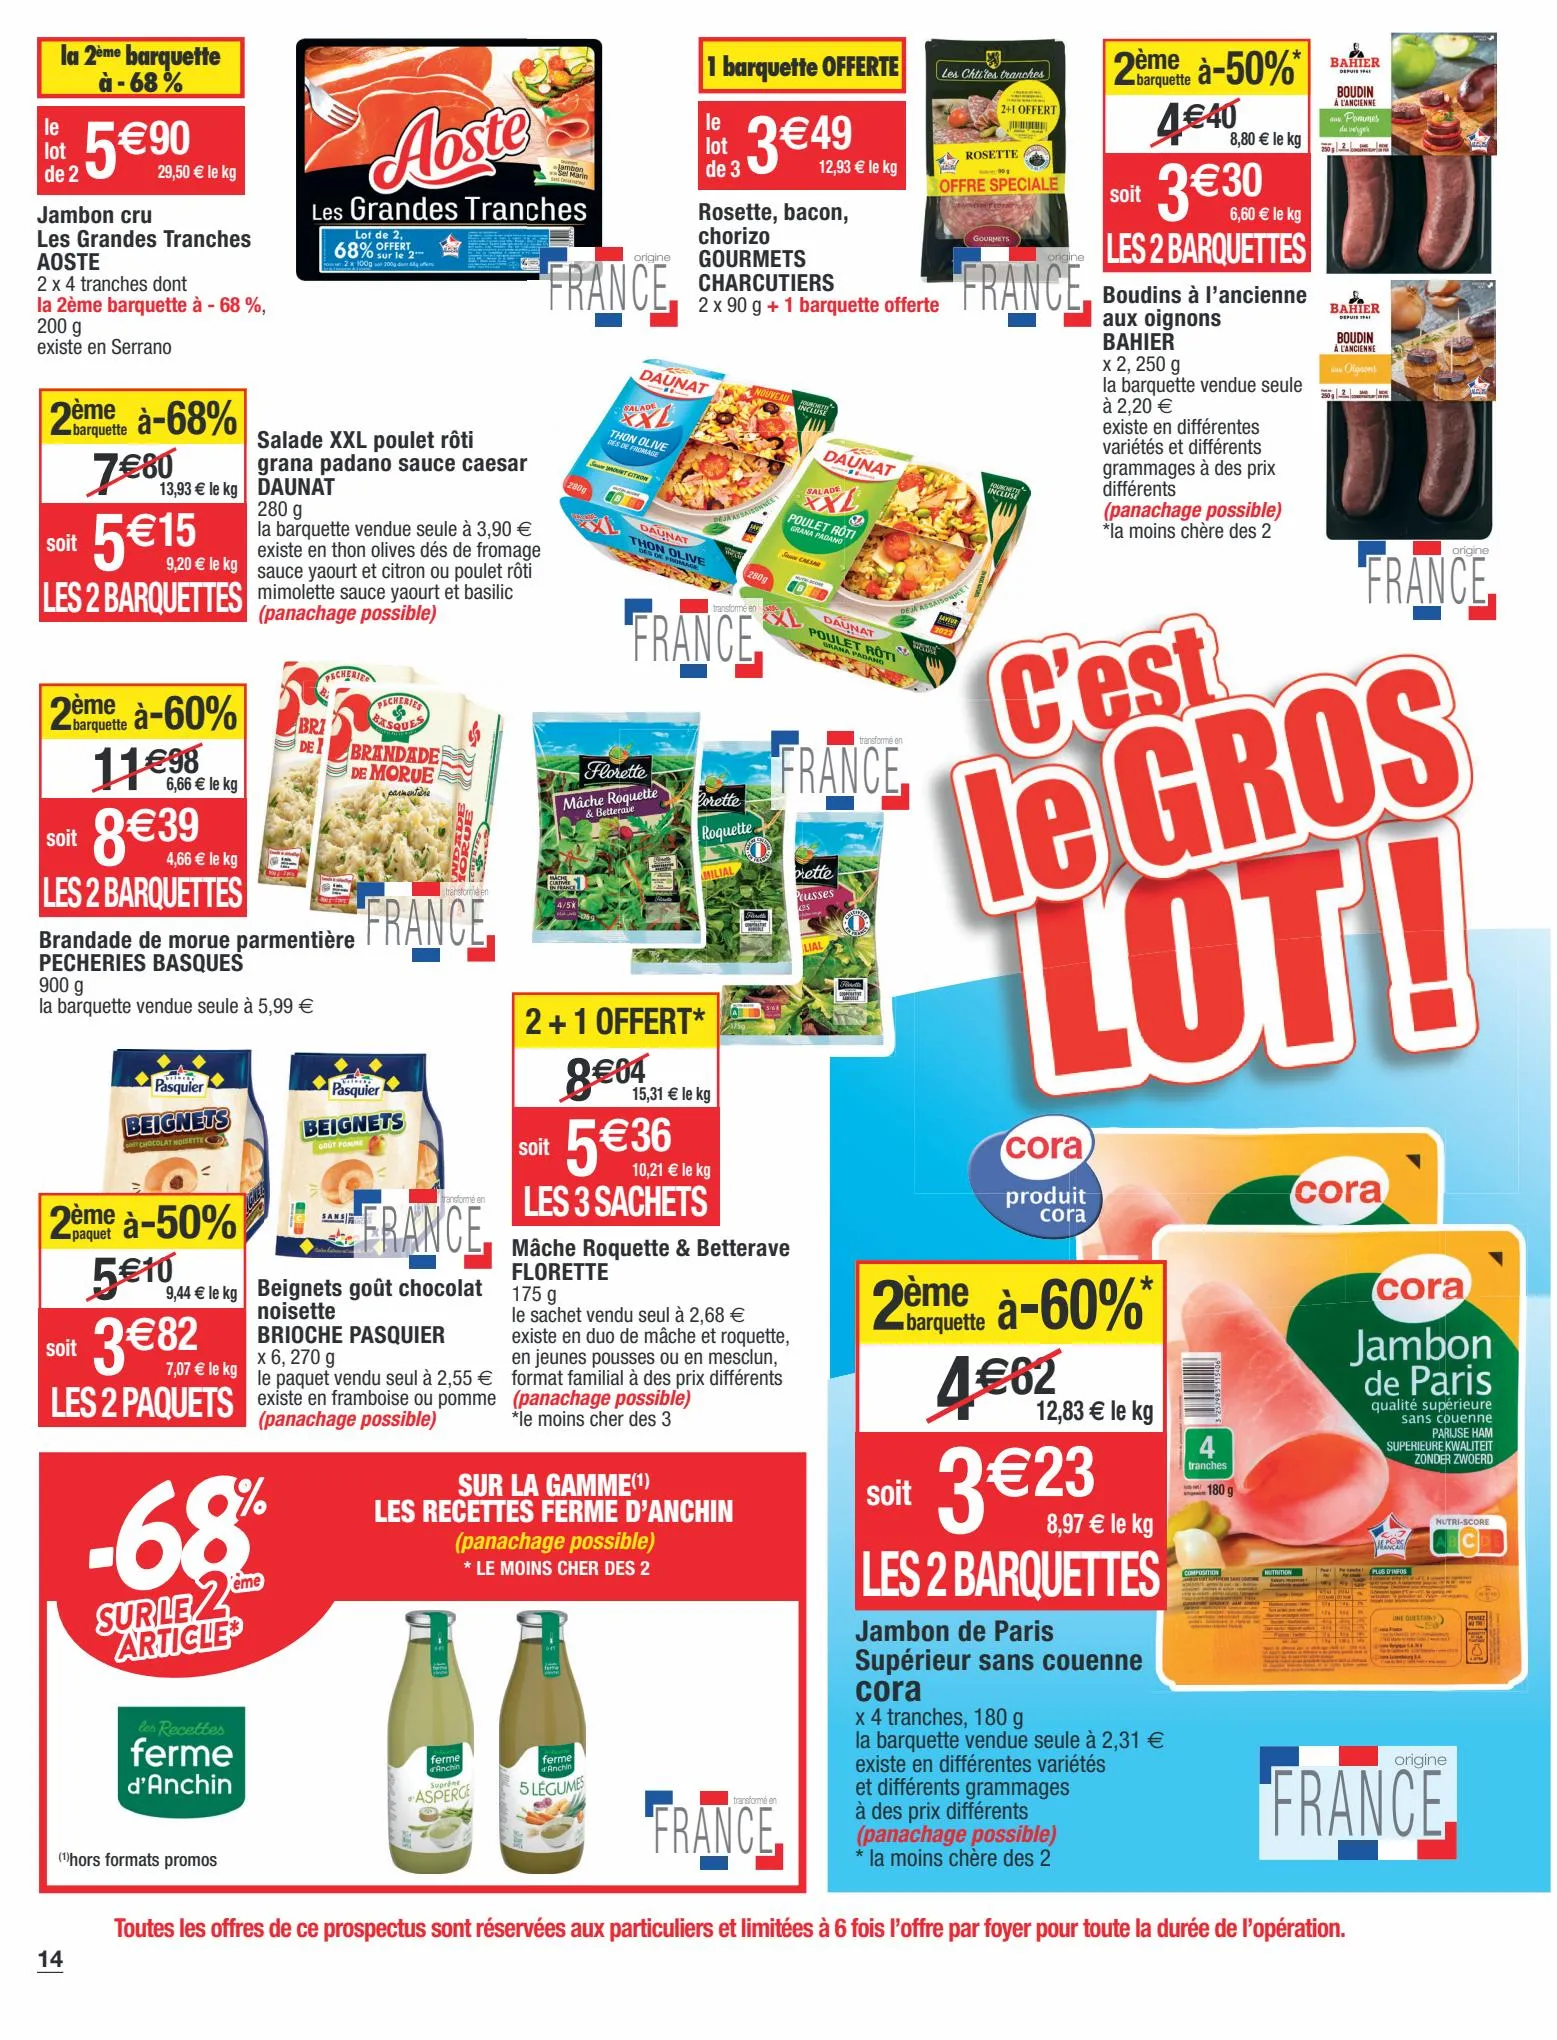 Catalogue C'est le gros lot!, page 00014